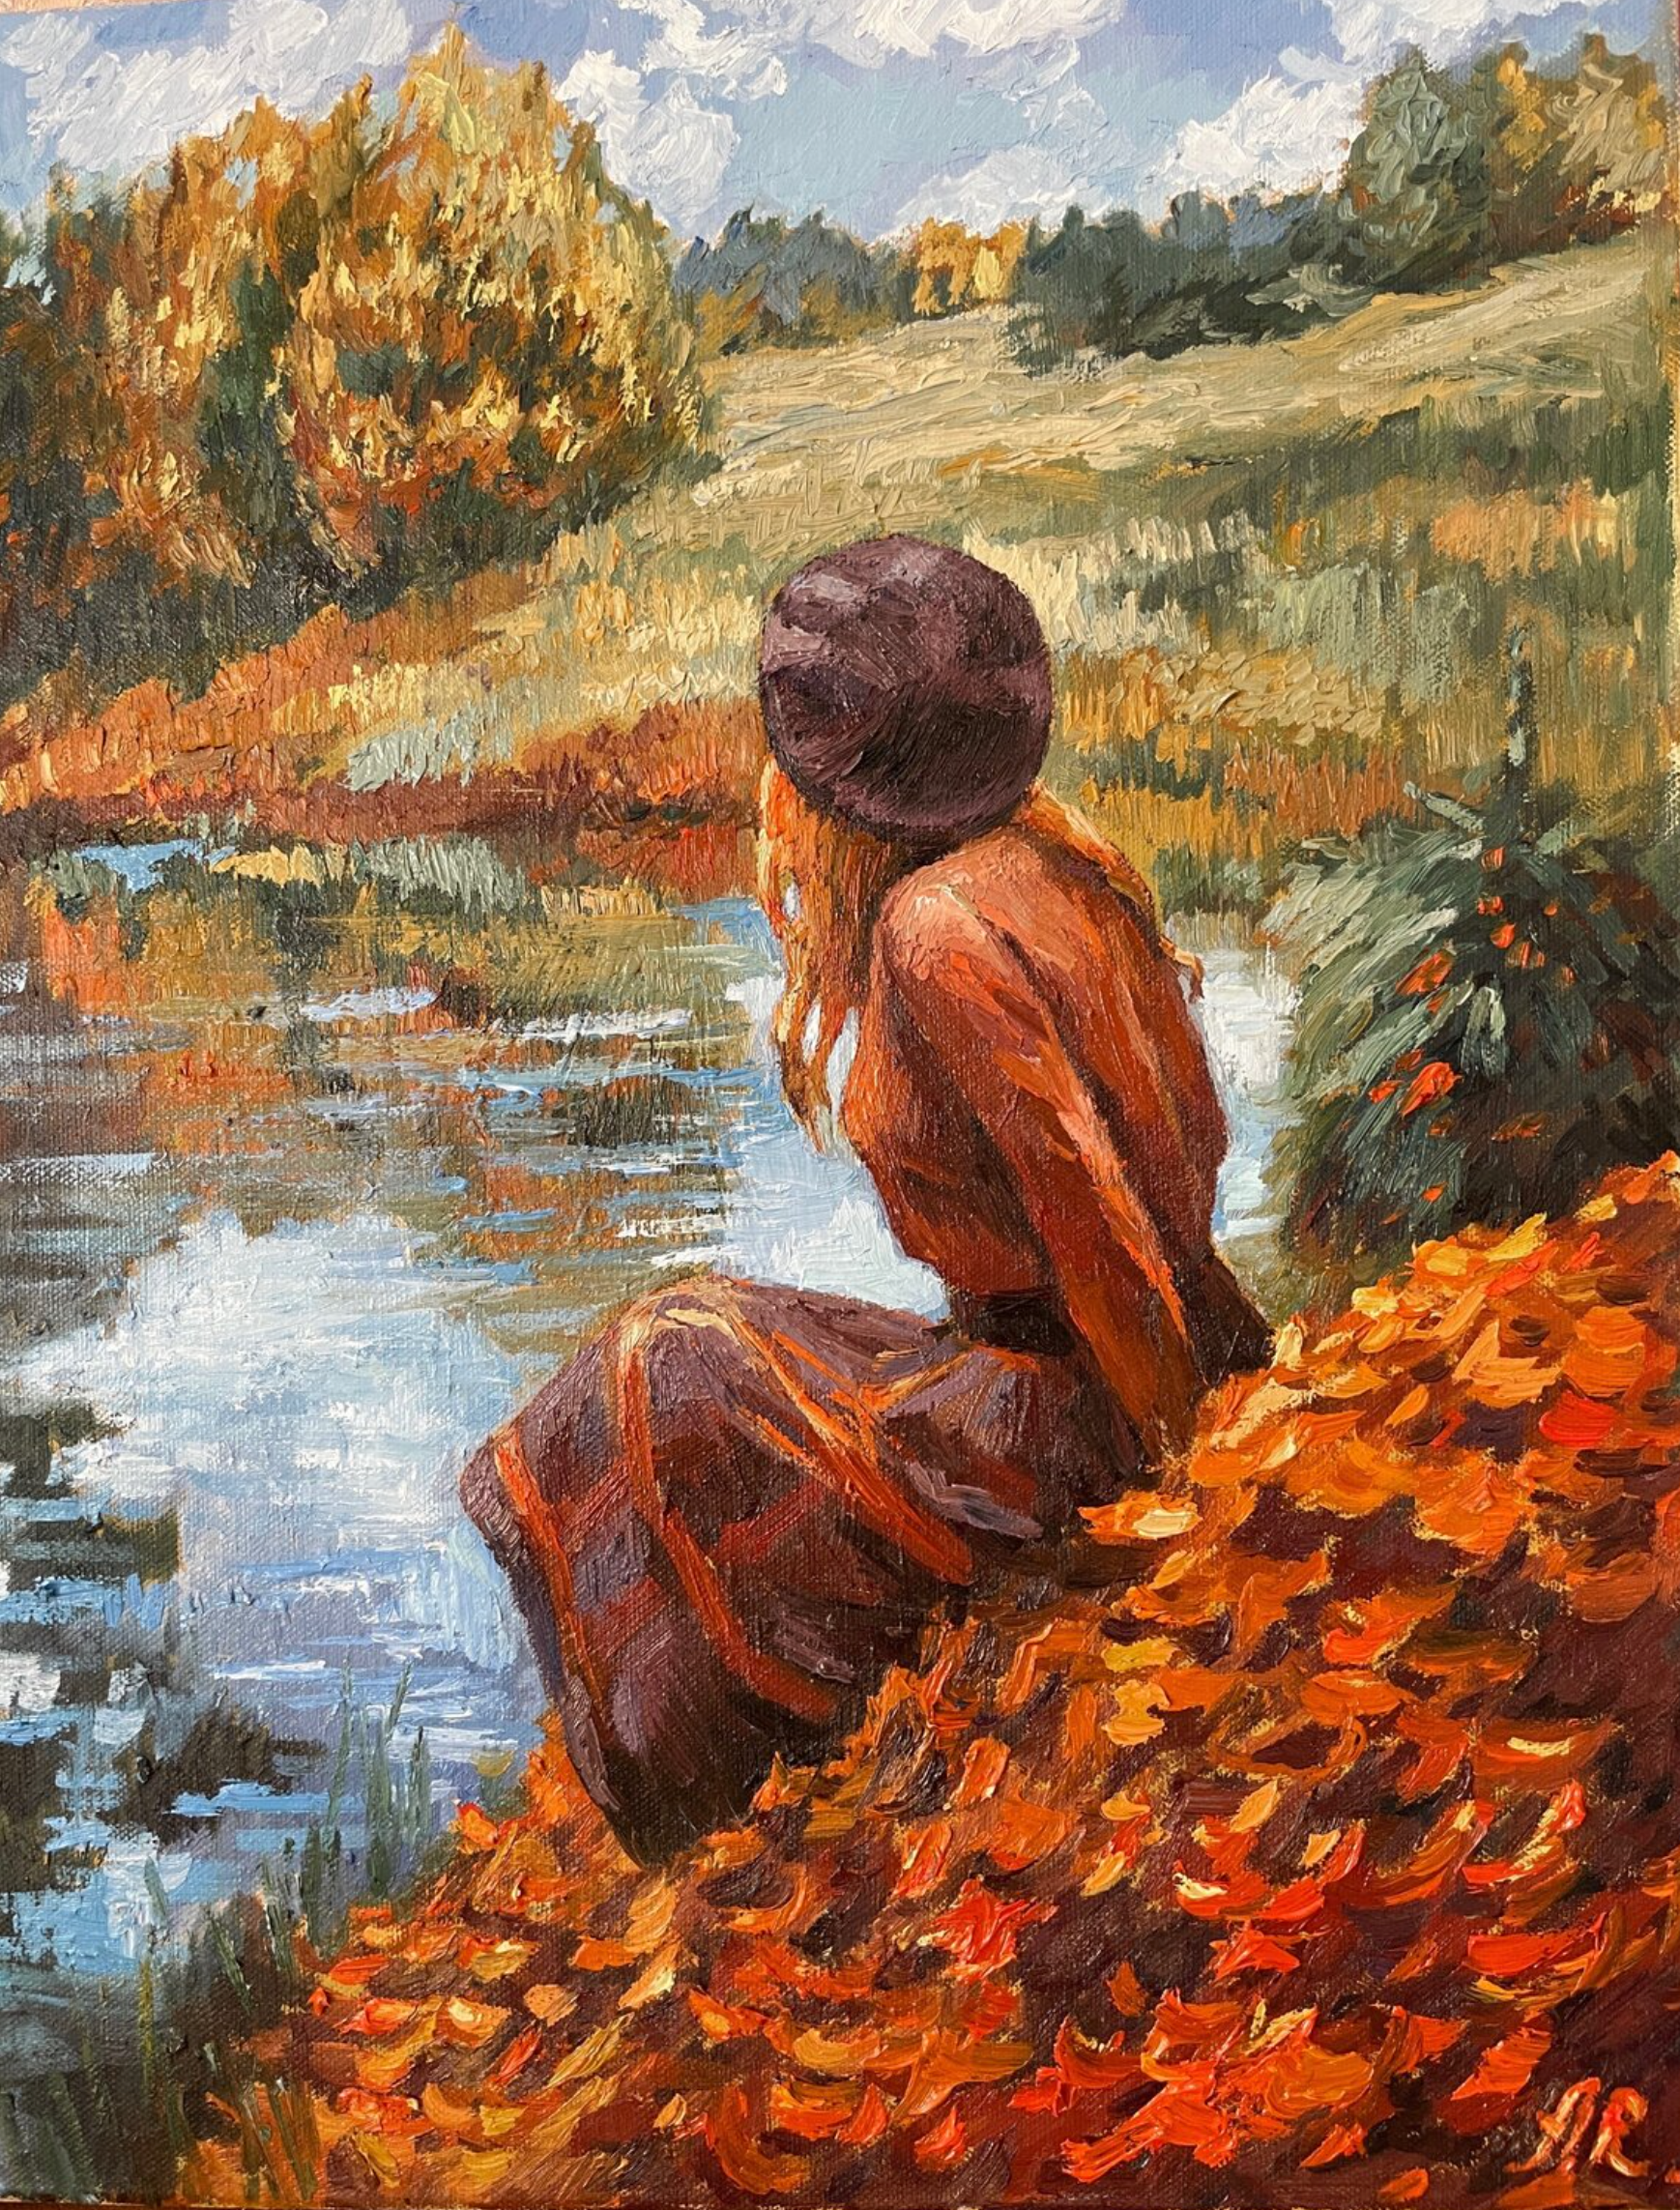 El cuadro "Cuento de otoño" de Anna Reznikova muestra un maravilloso paisaje otoñal. Una joven está sentada en un prado junto a un lago, con maravillosos colores otoñales, marrón, amarillo, rojo. Pintado con pinceles sobre lienzo de algodón.